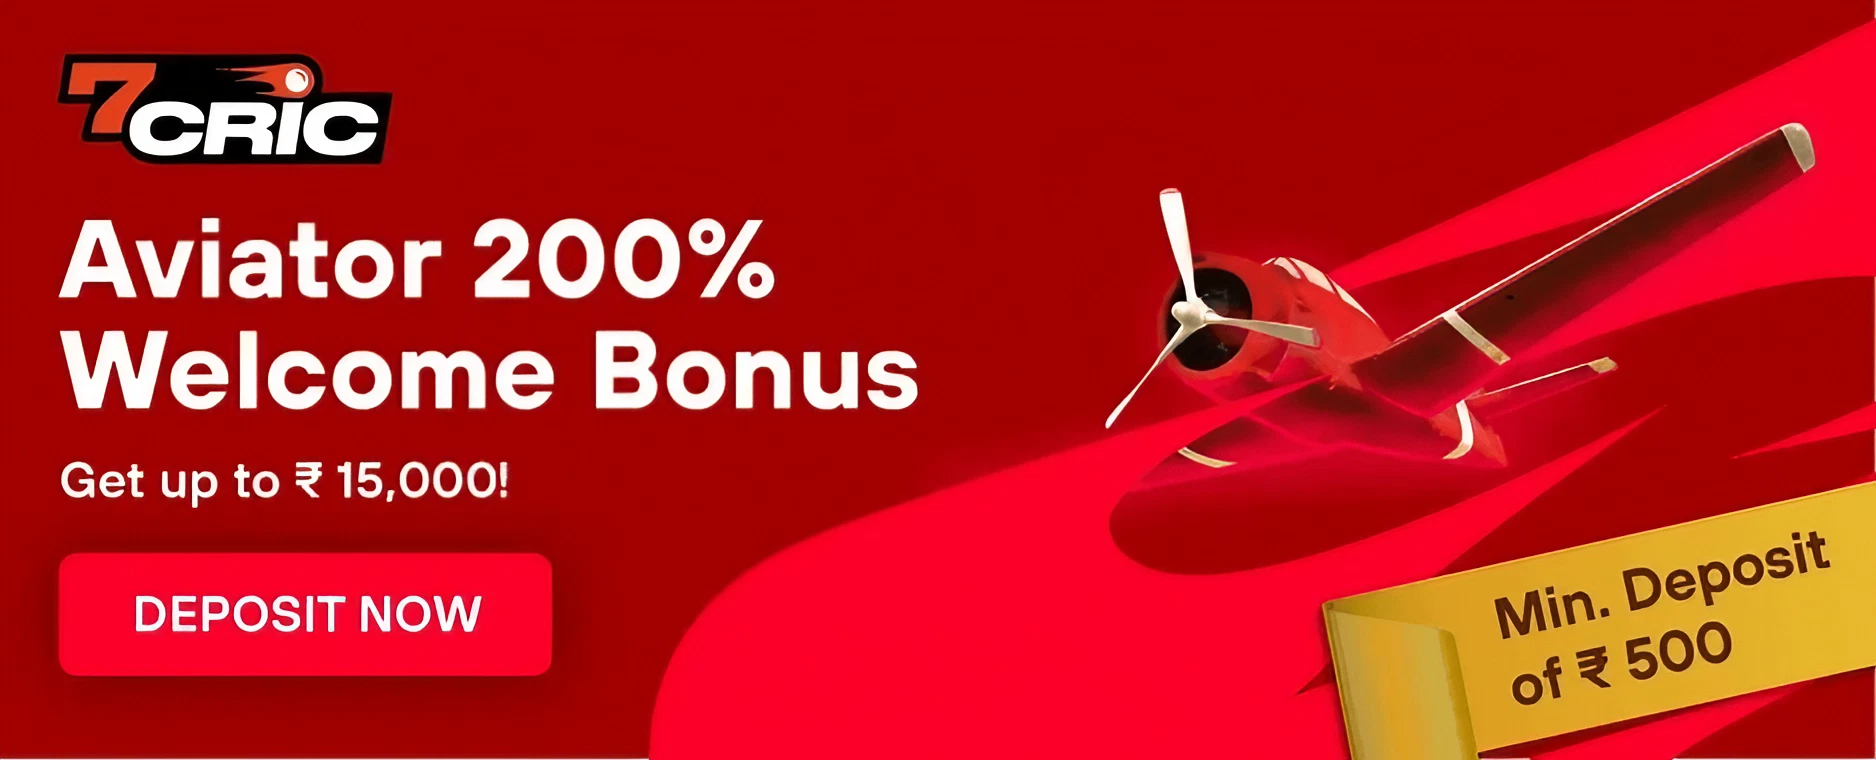 Aviator 200% Welcome Bonus